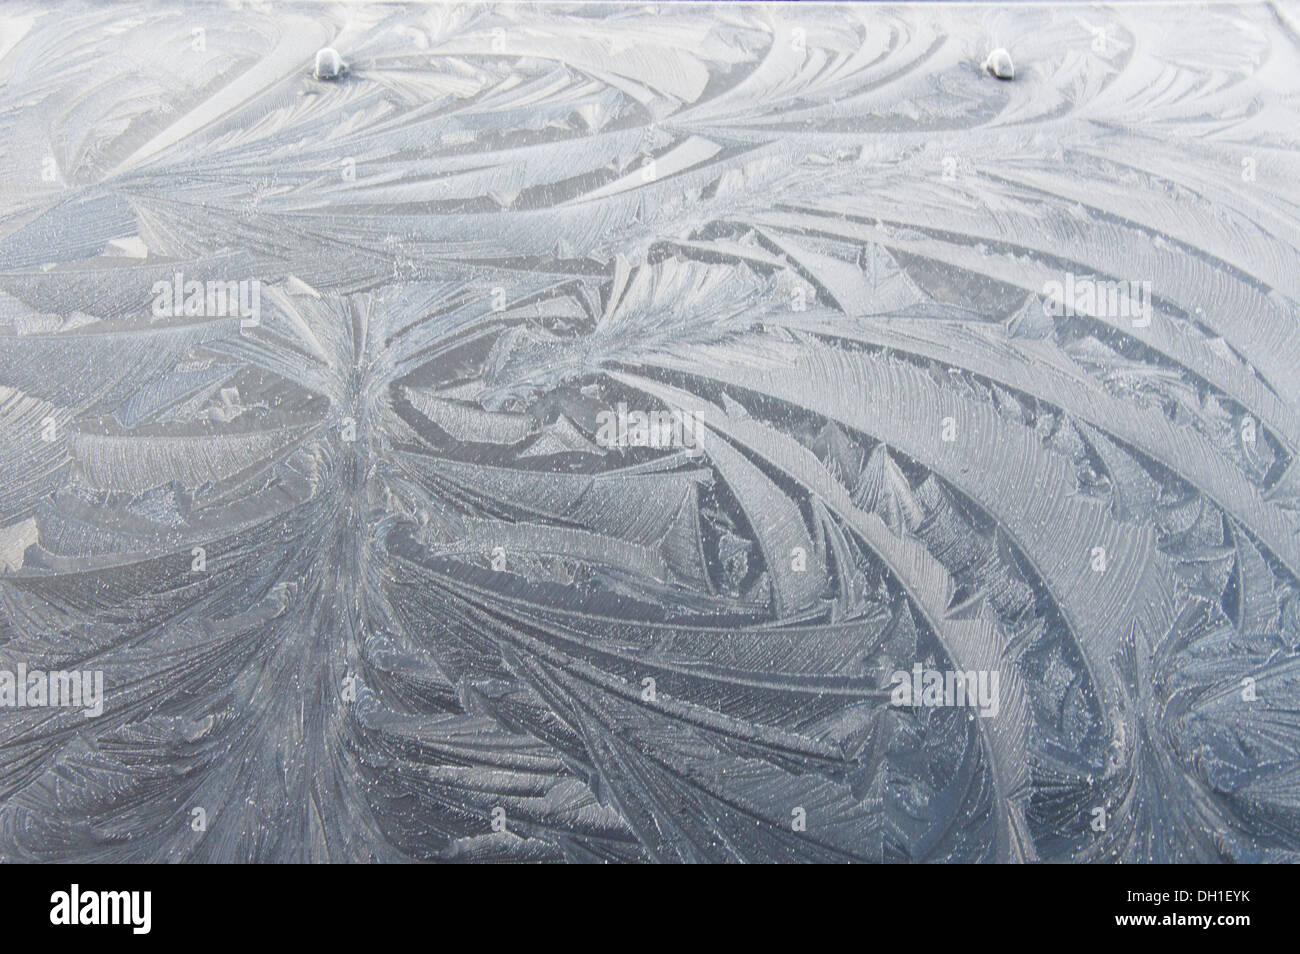 Les patrons de gel sur capot de voiture, Ecosse, Royaume-Uni Banque D'Images